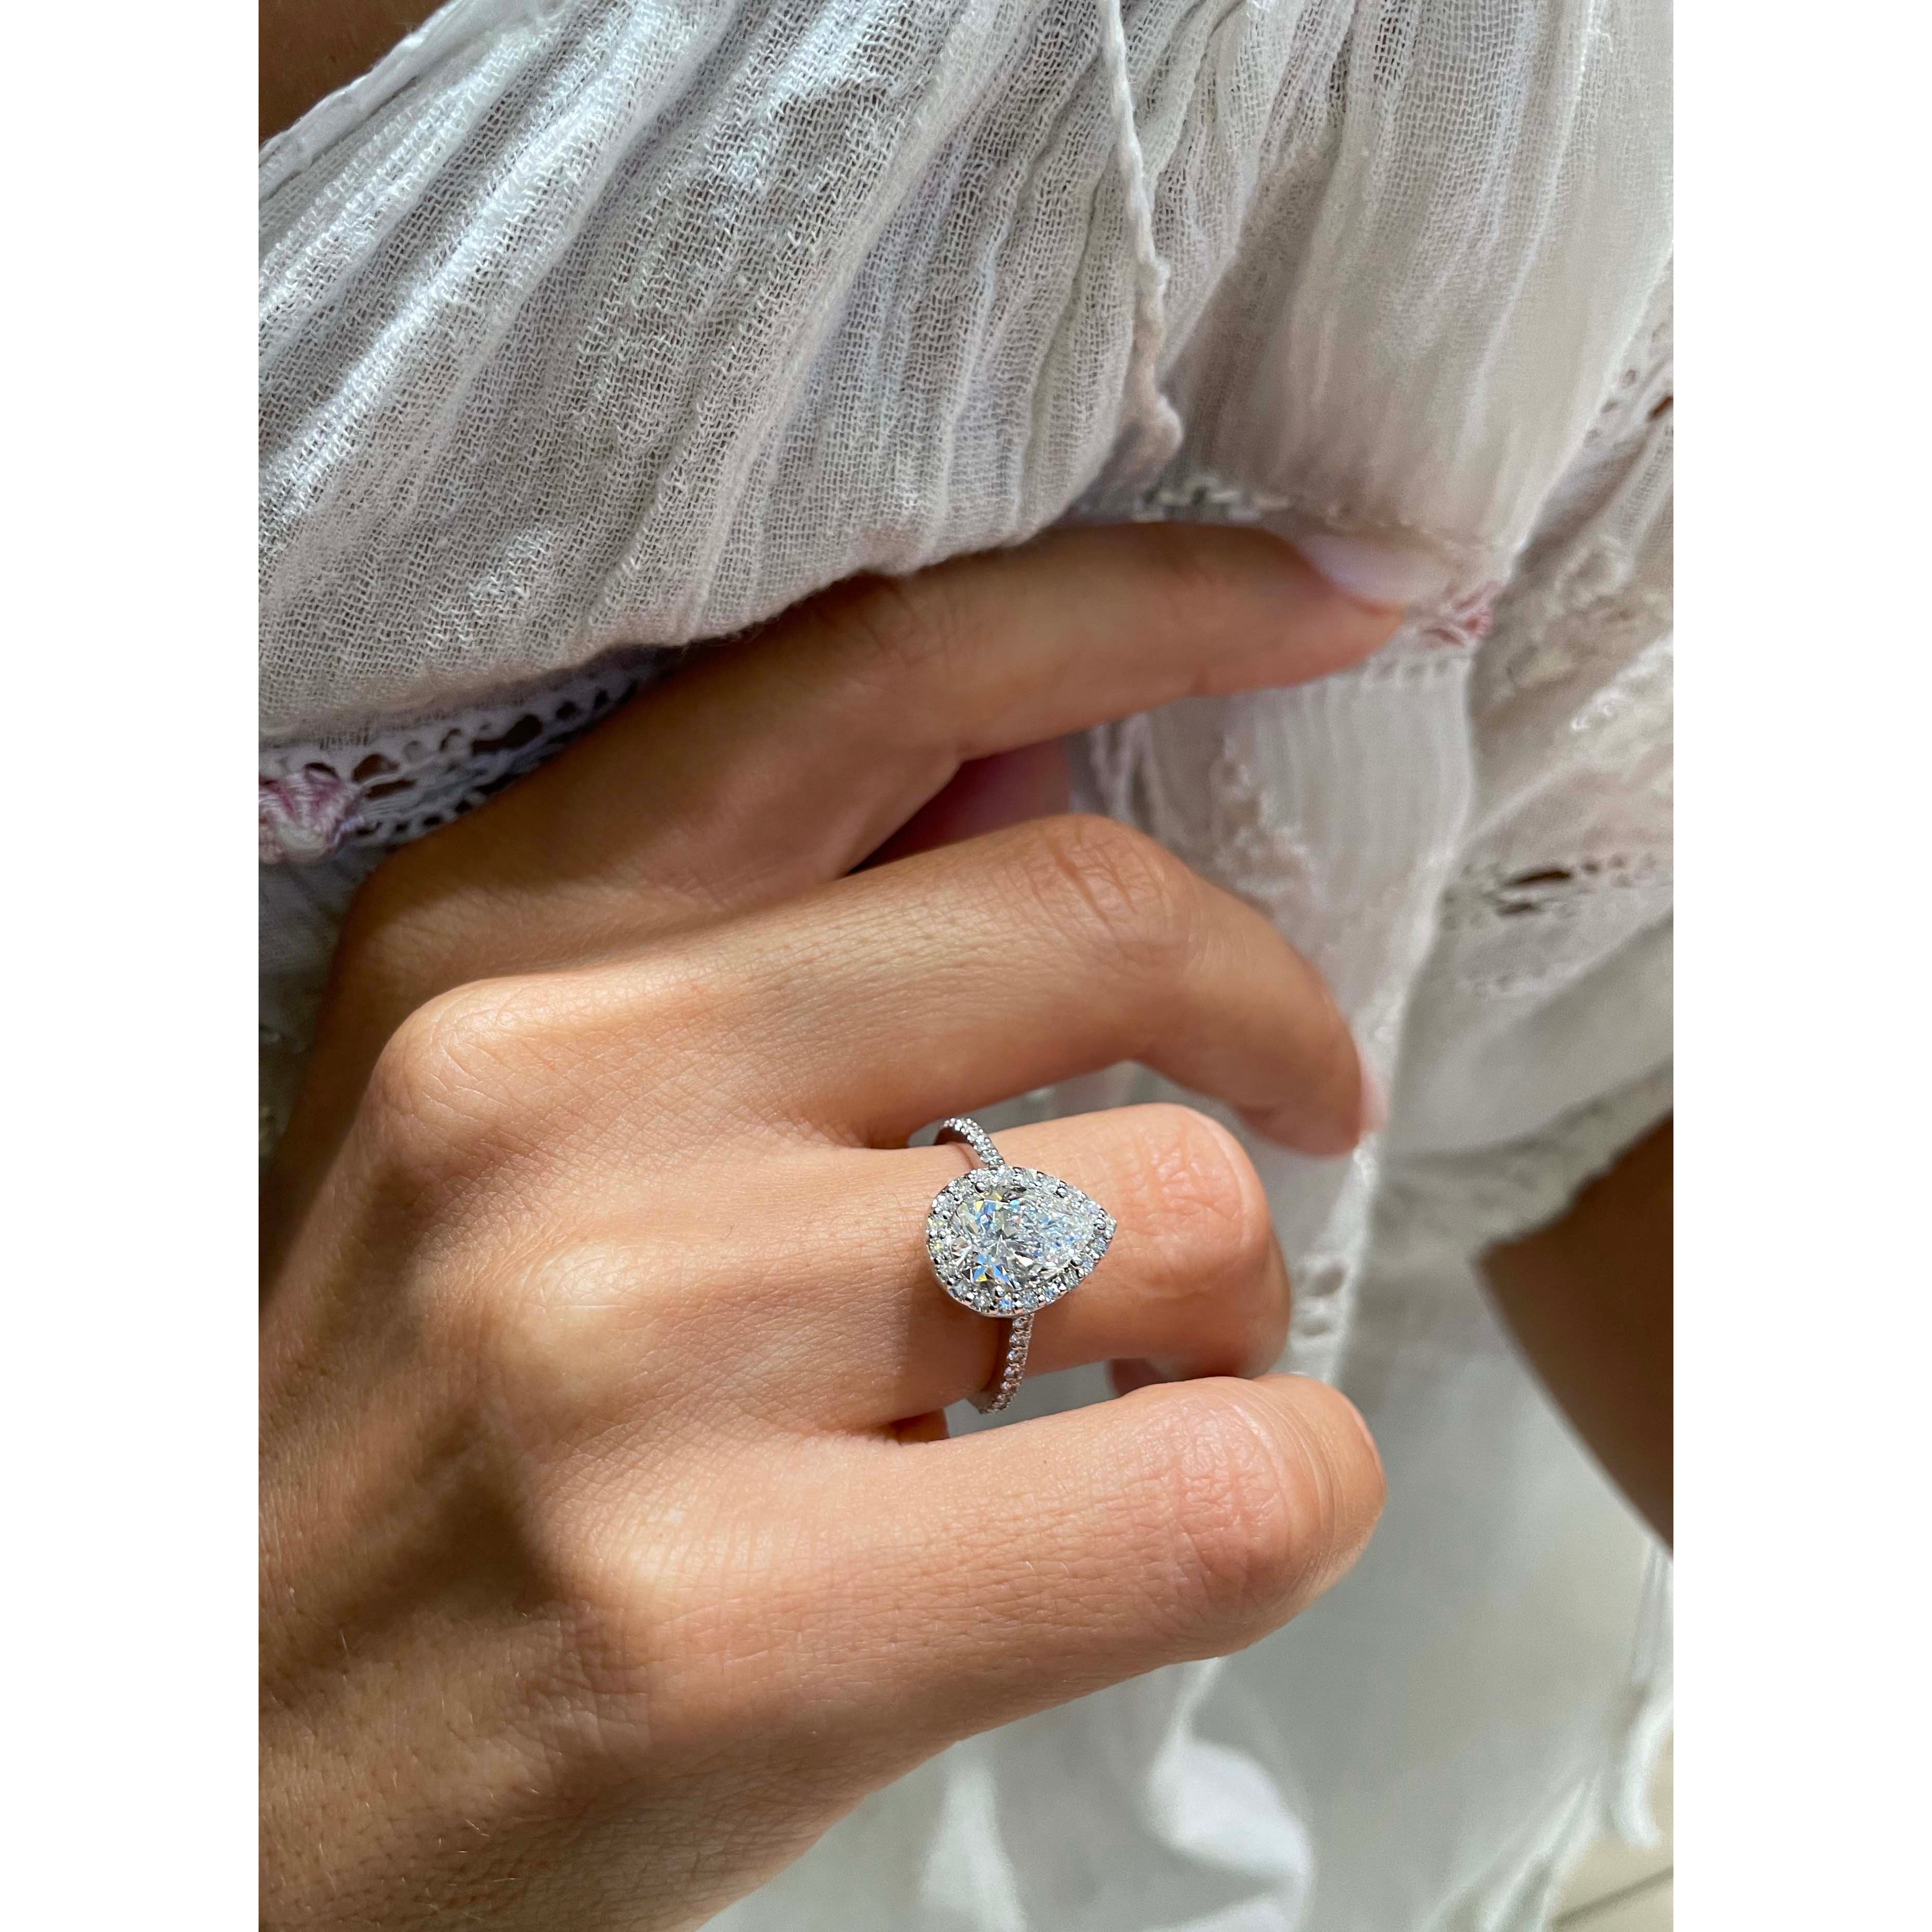 Sophia Diamond Engagement Ring -Platinum